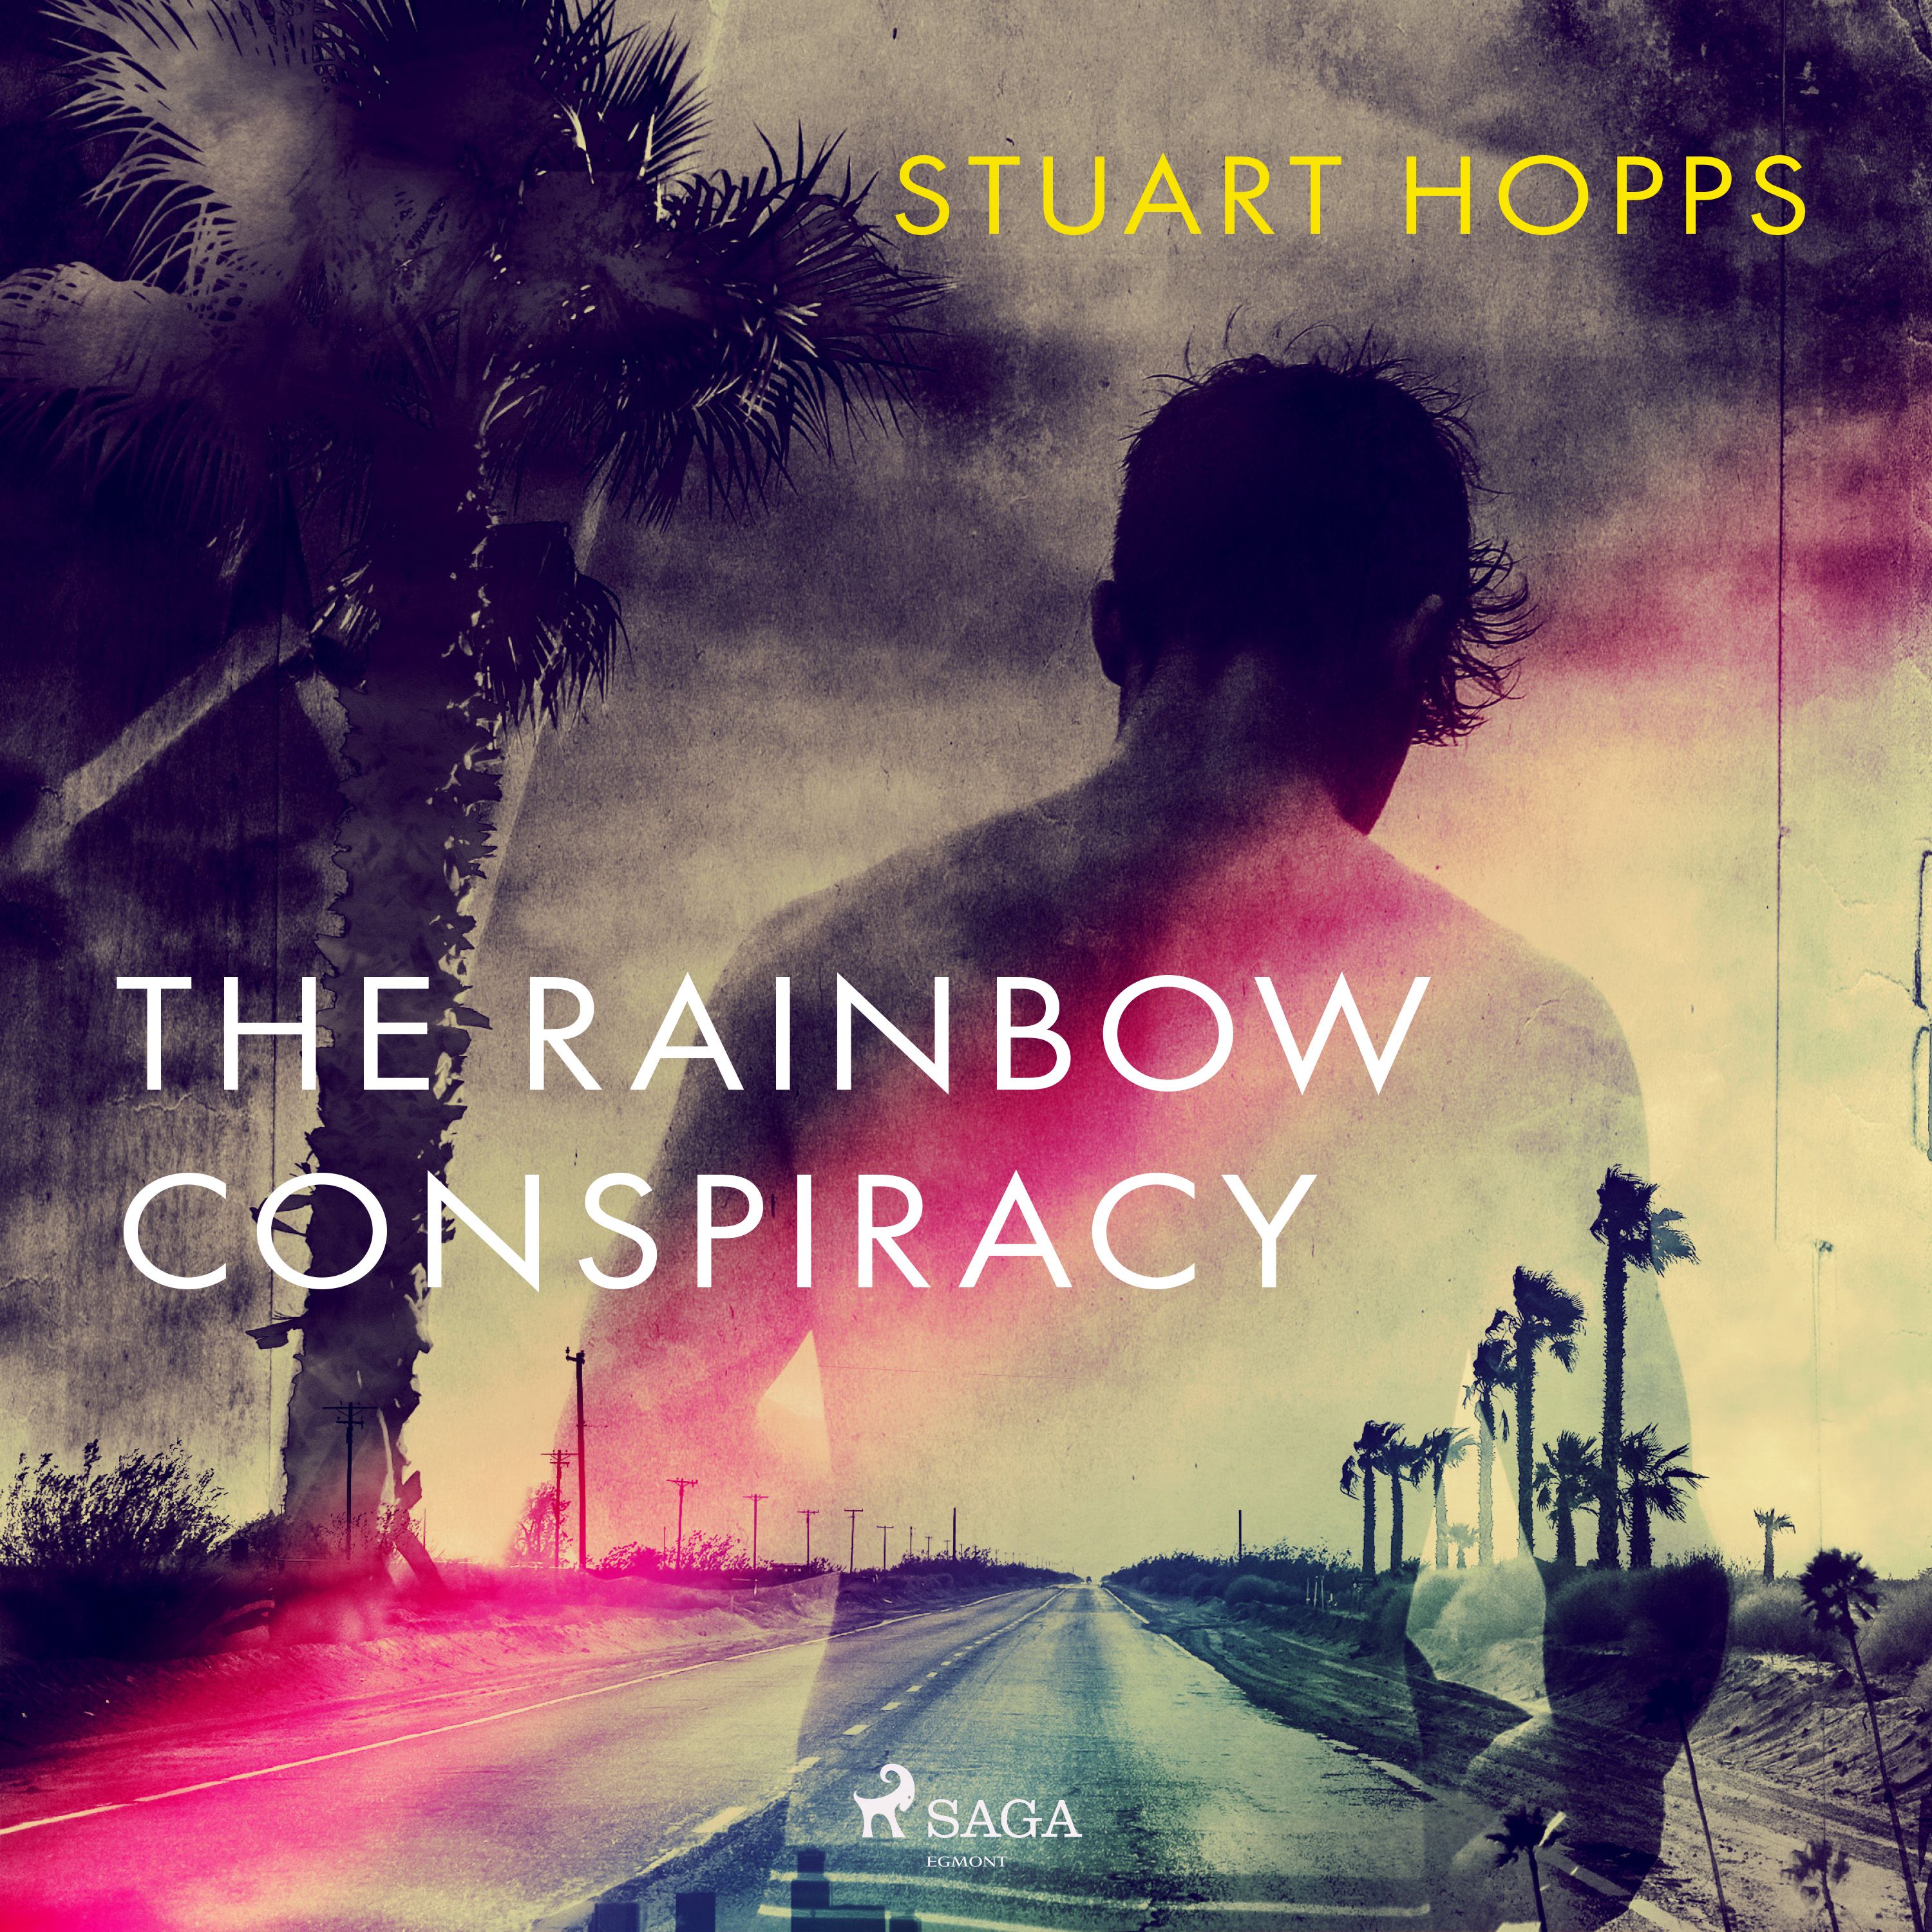 The Rainbow Conspiracy, lydbog af Stuart Hopps